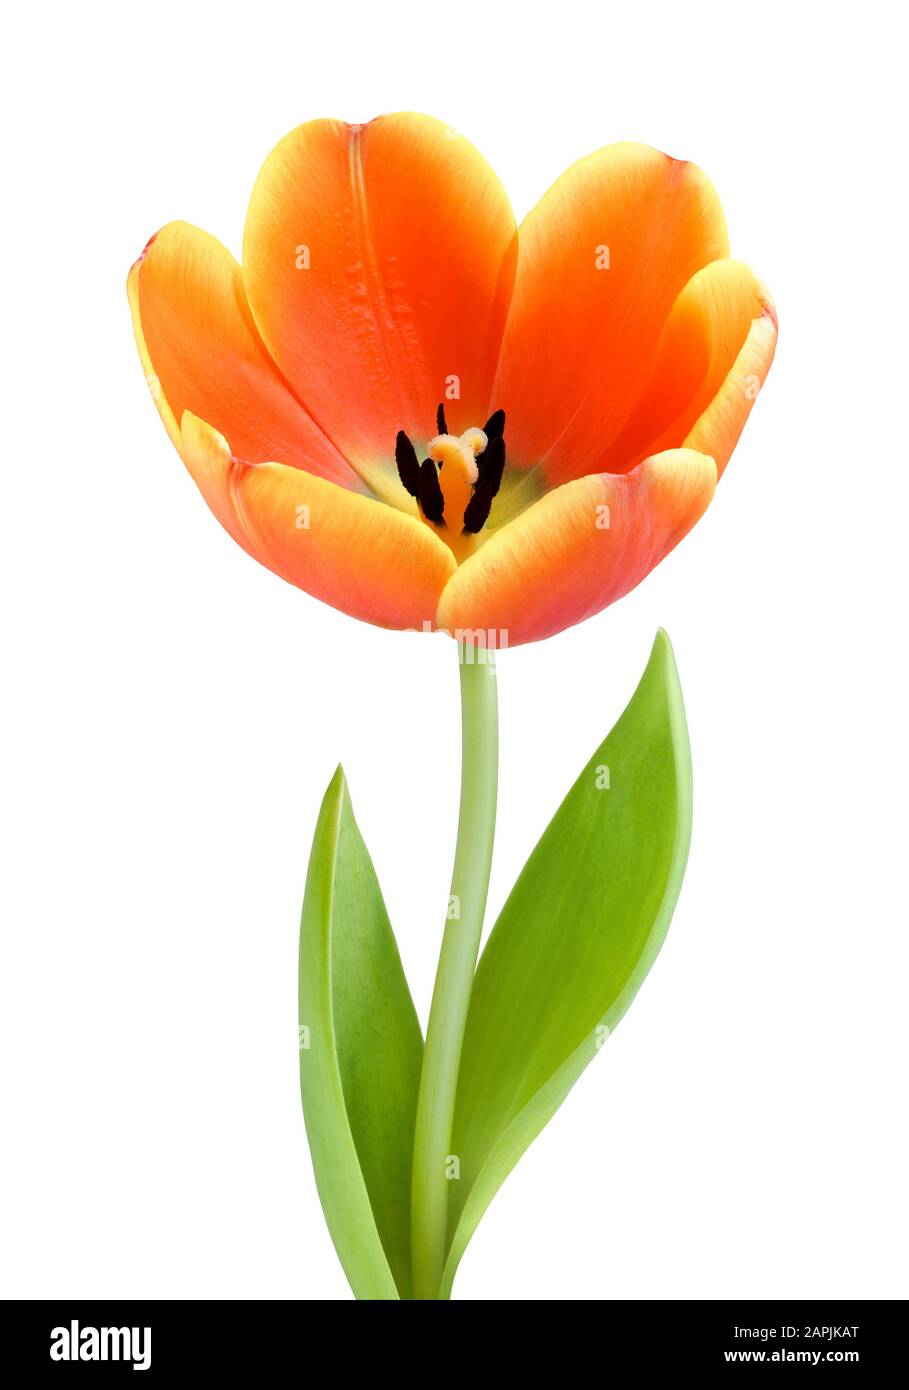 Tulipano arancione completamente fiorito, studio isolato su sfondo bianco Foto Stock